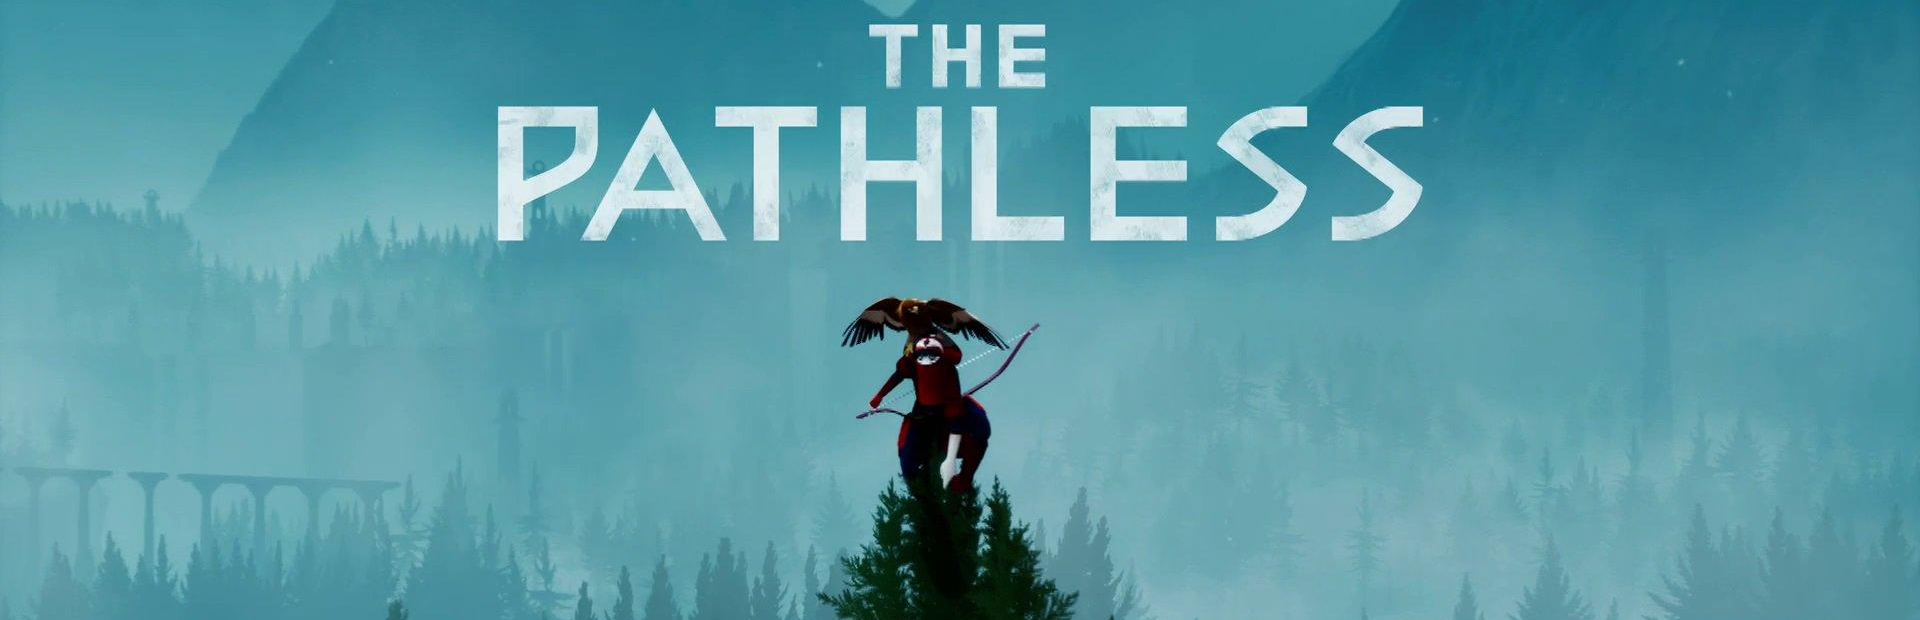 دانلودبازی The Pathless برای پی سی | گیمباتو